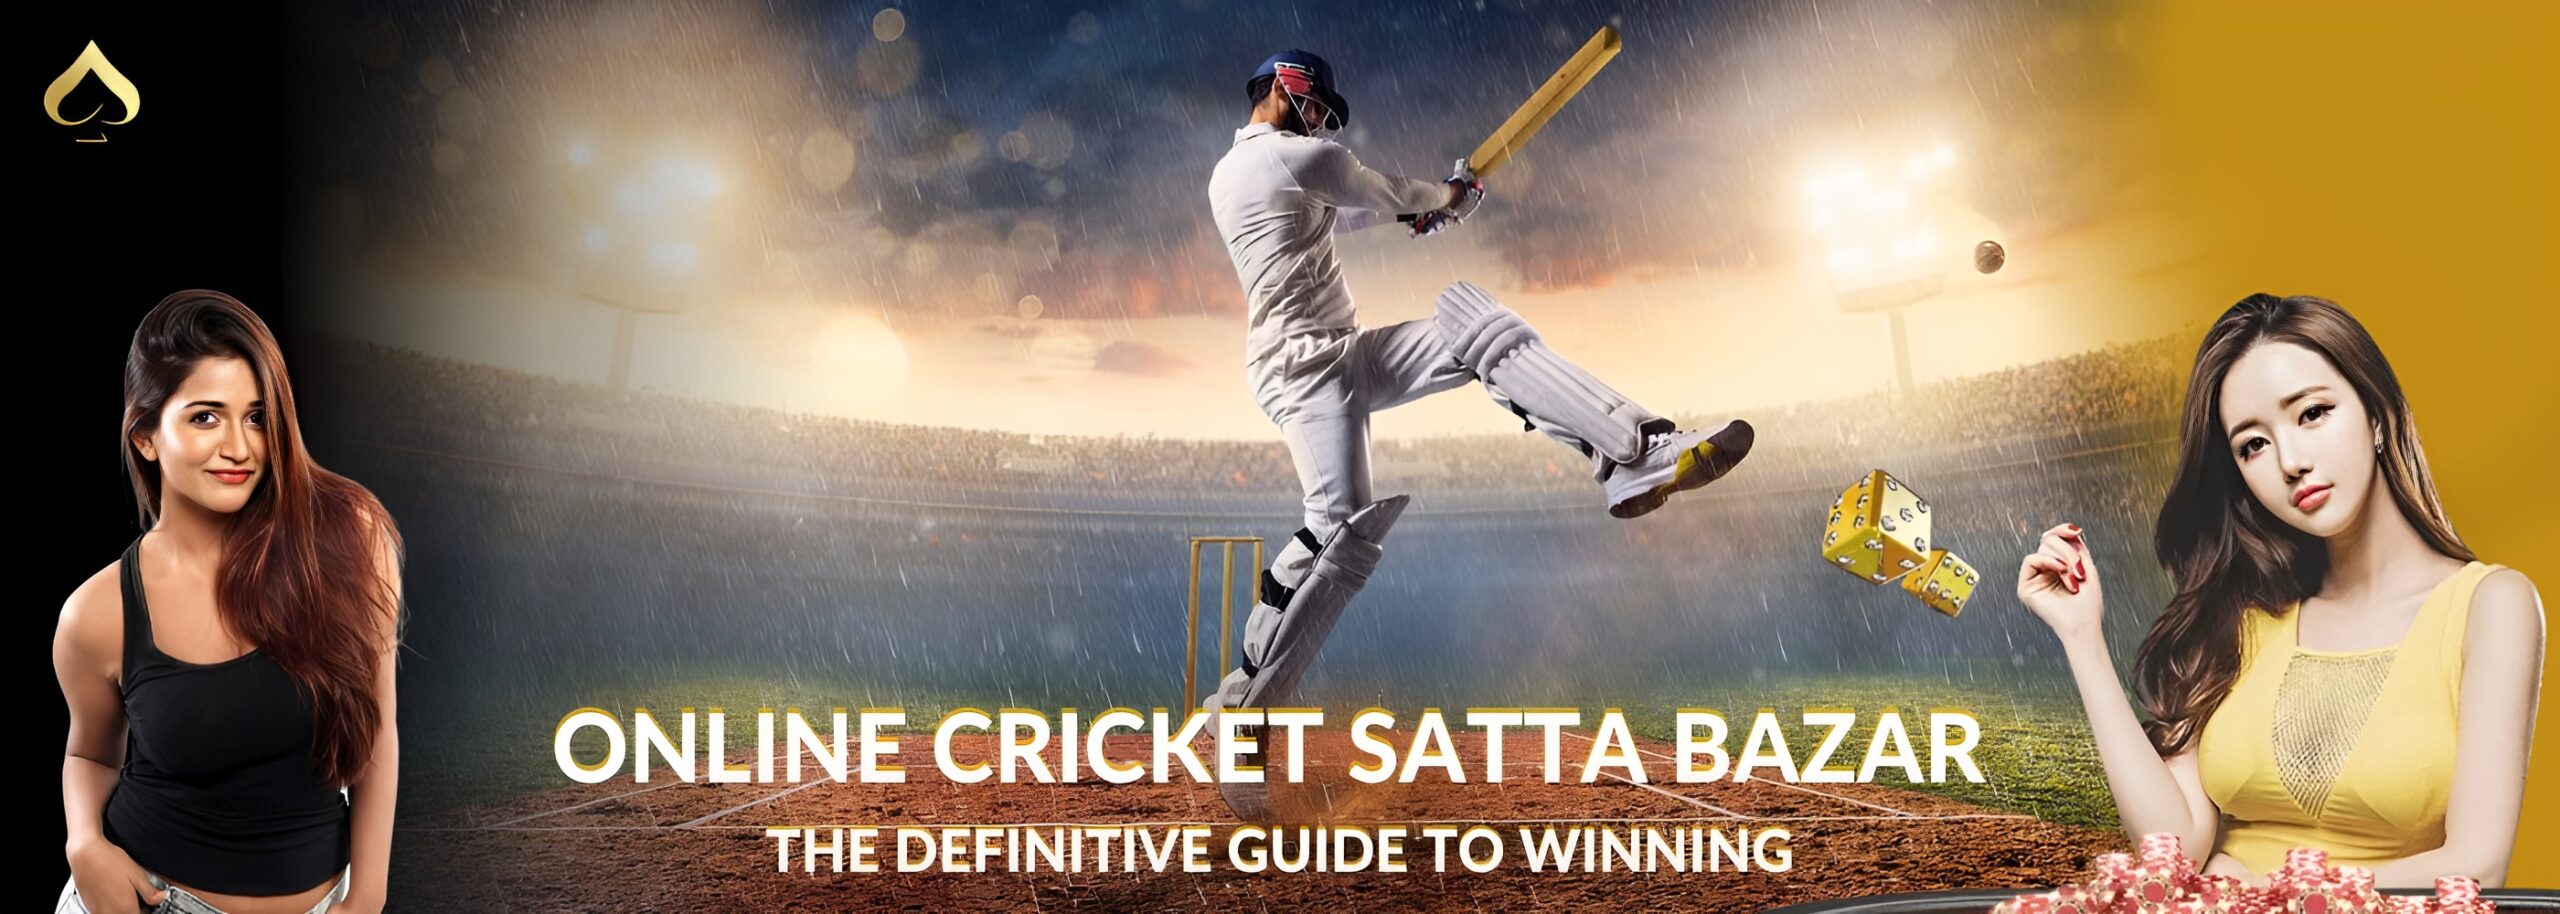 Online Cricket Satta Bazar